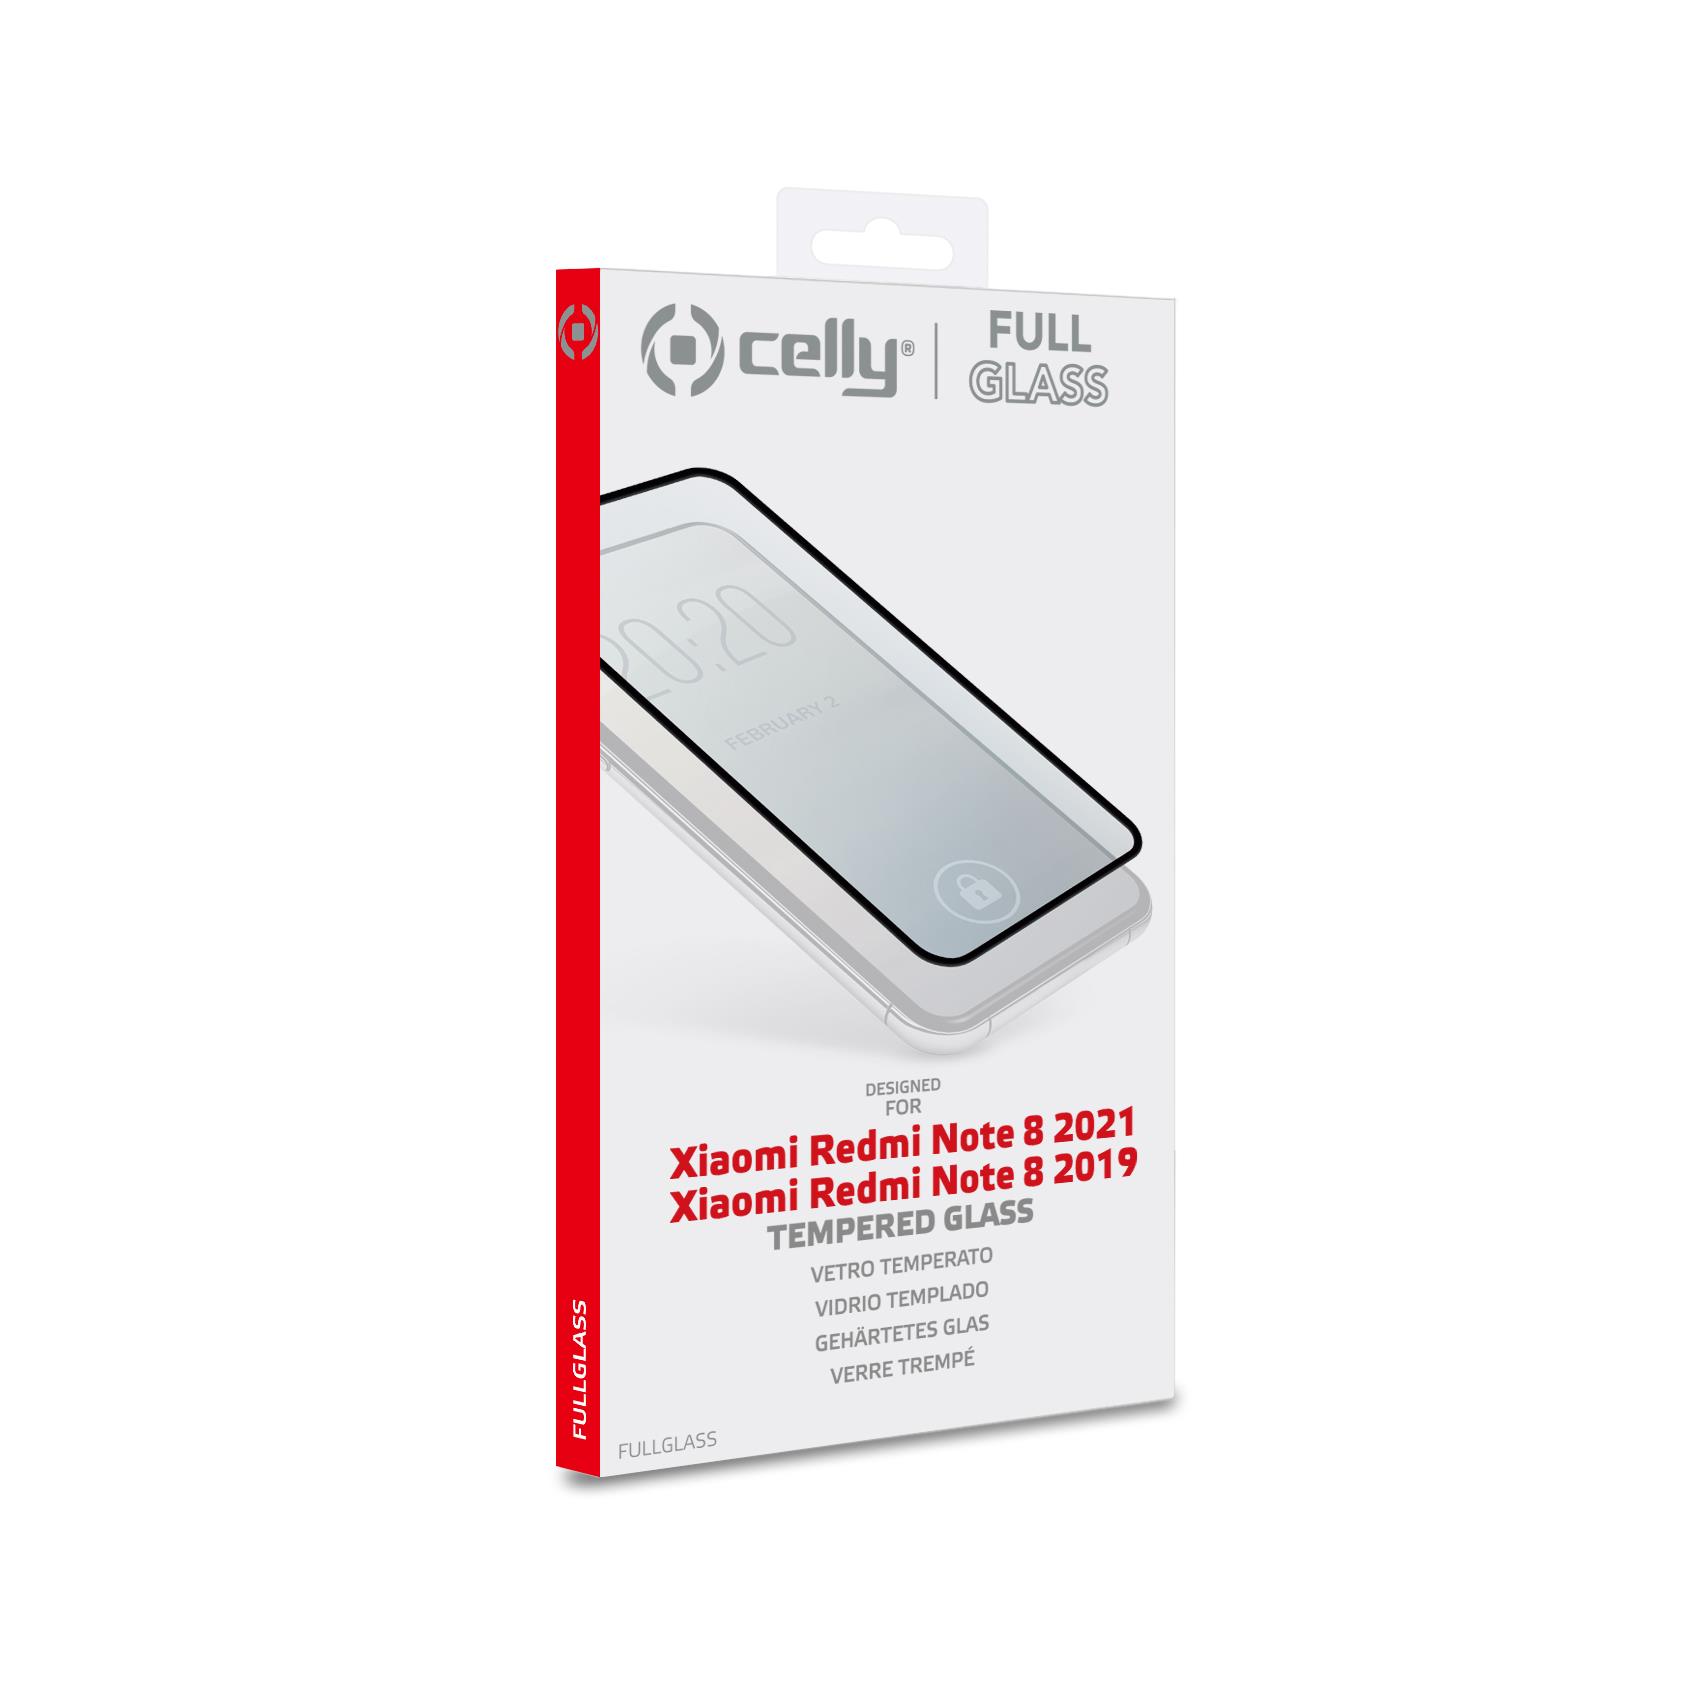 Full Glass Redmi Note 8 2021 2019 Celly Fullglass978bk 8021735192947